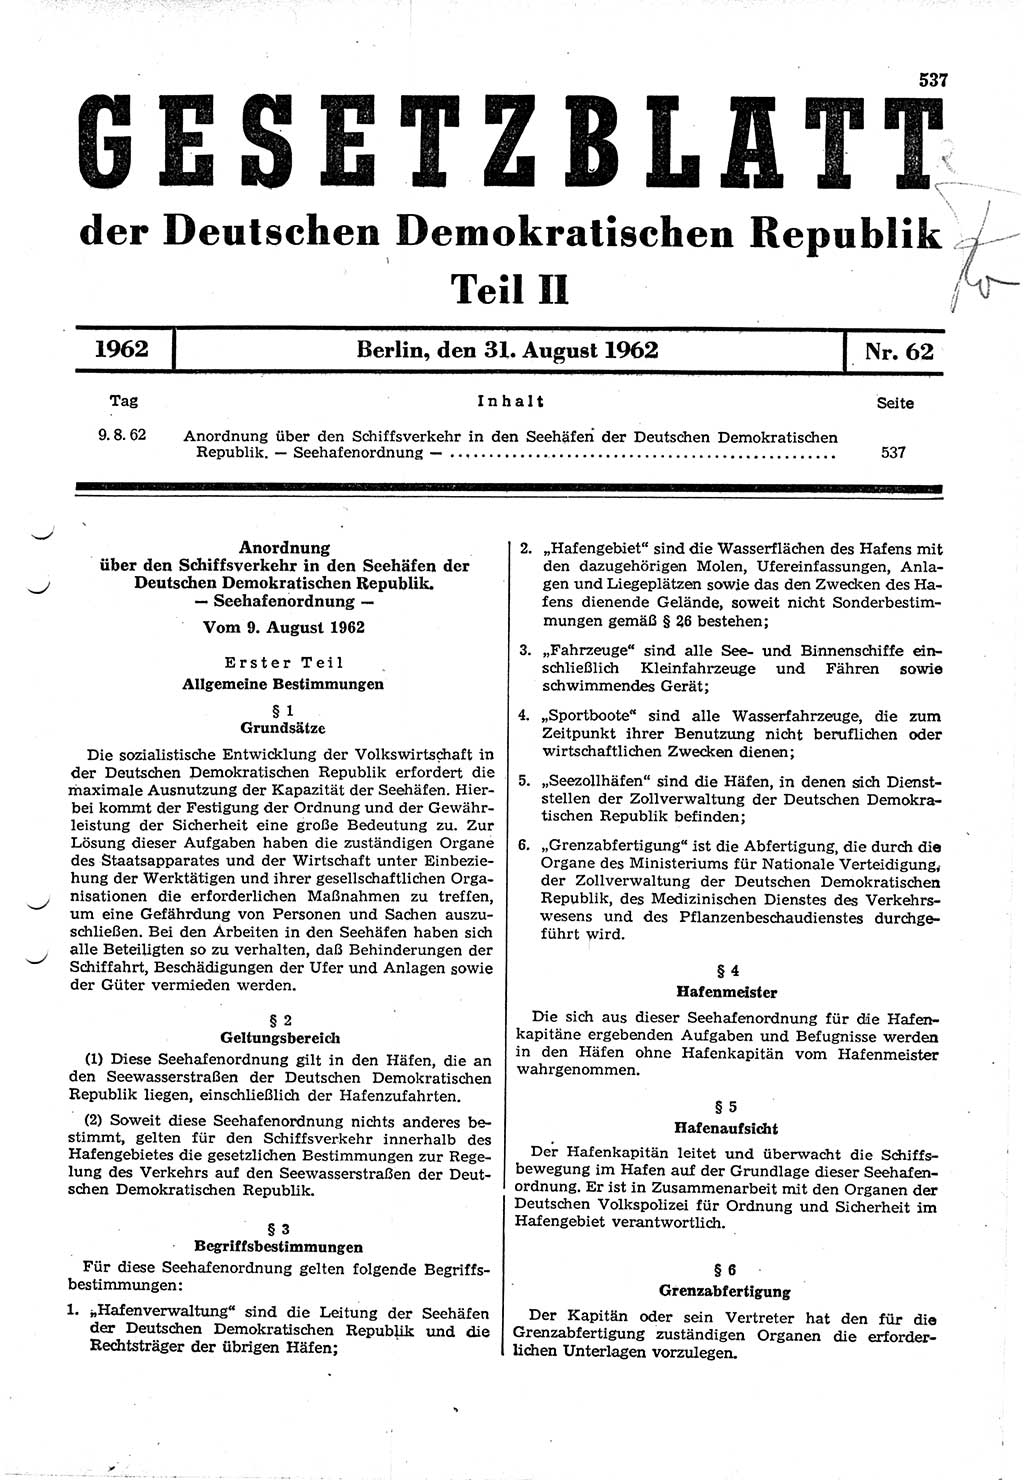 Gesetzblatt (GBl.) der Deutschen Demokratischen Republik (DDR) Teil ⅠⅠ 1962, Seite 537 (GBl. DDR ⅠⅠ 1962, S. 537)